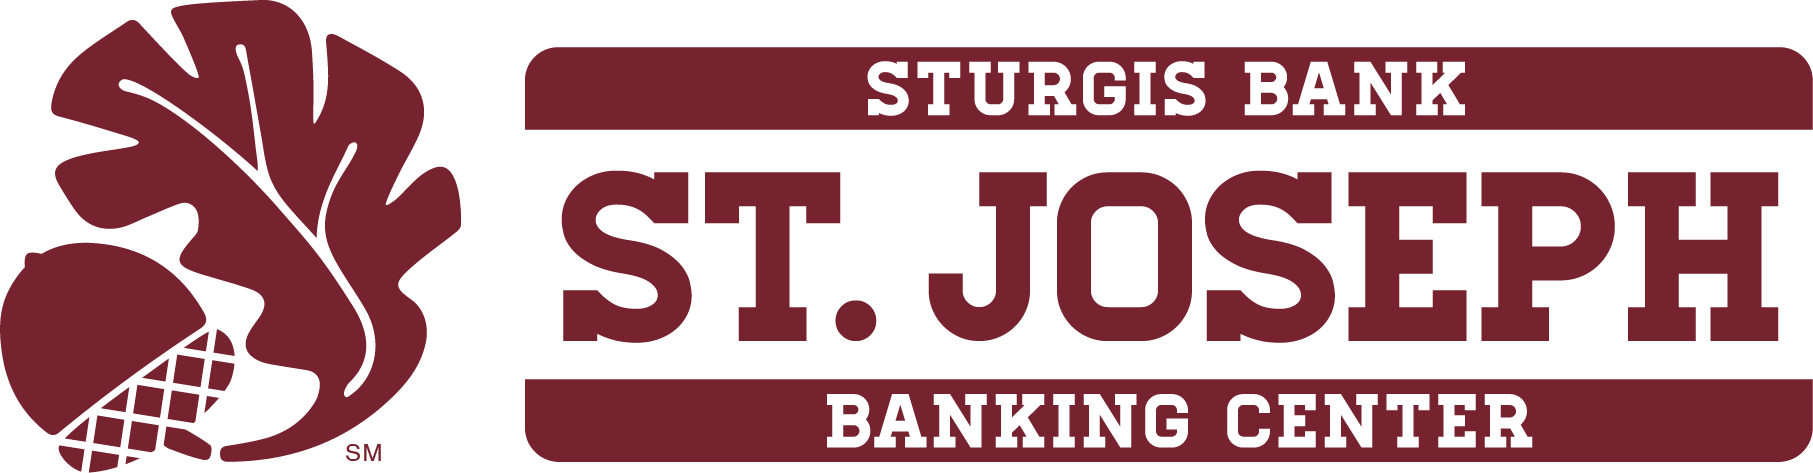 Link to Sturgis Bank's website